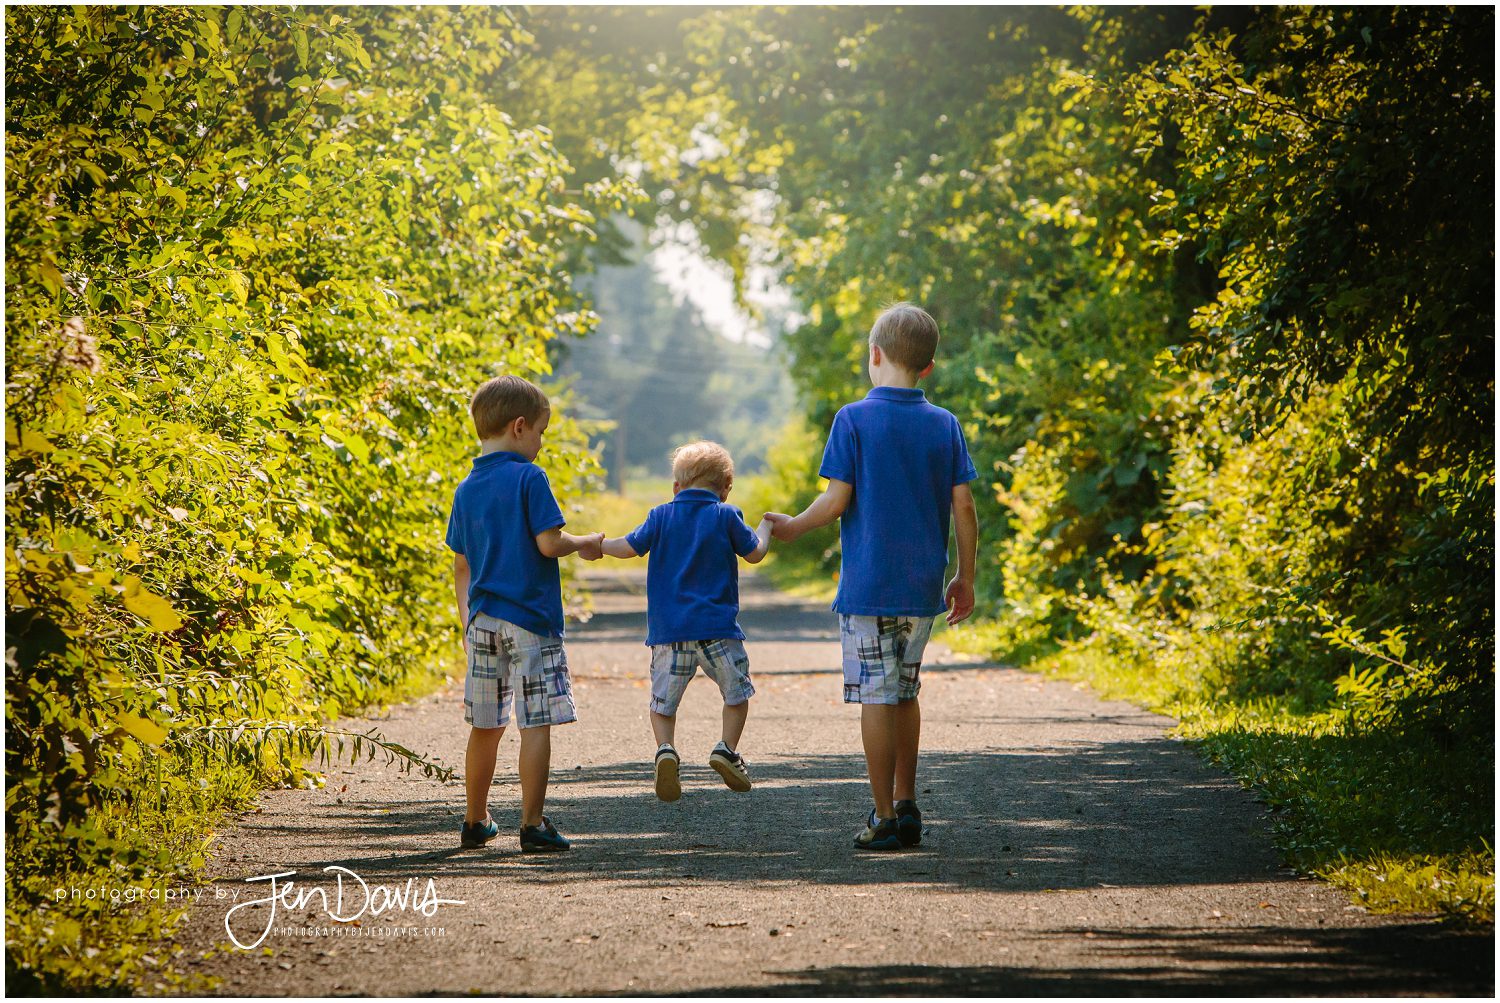 3 boys walking together